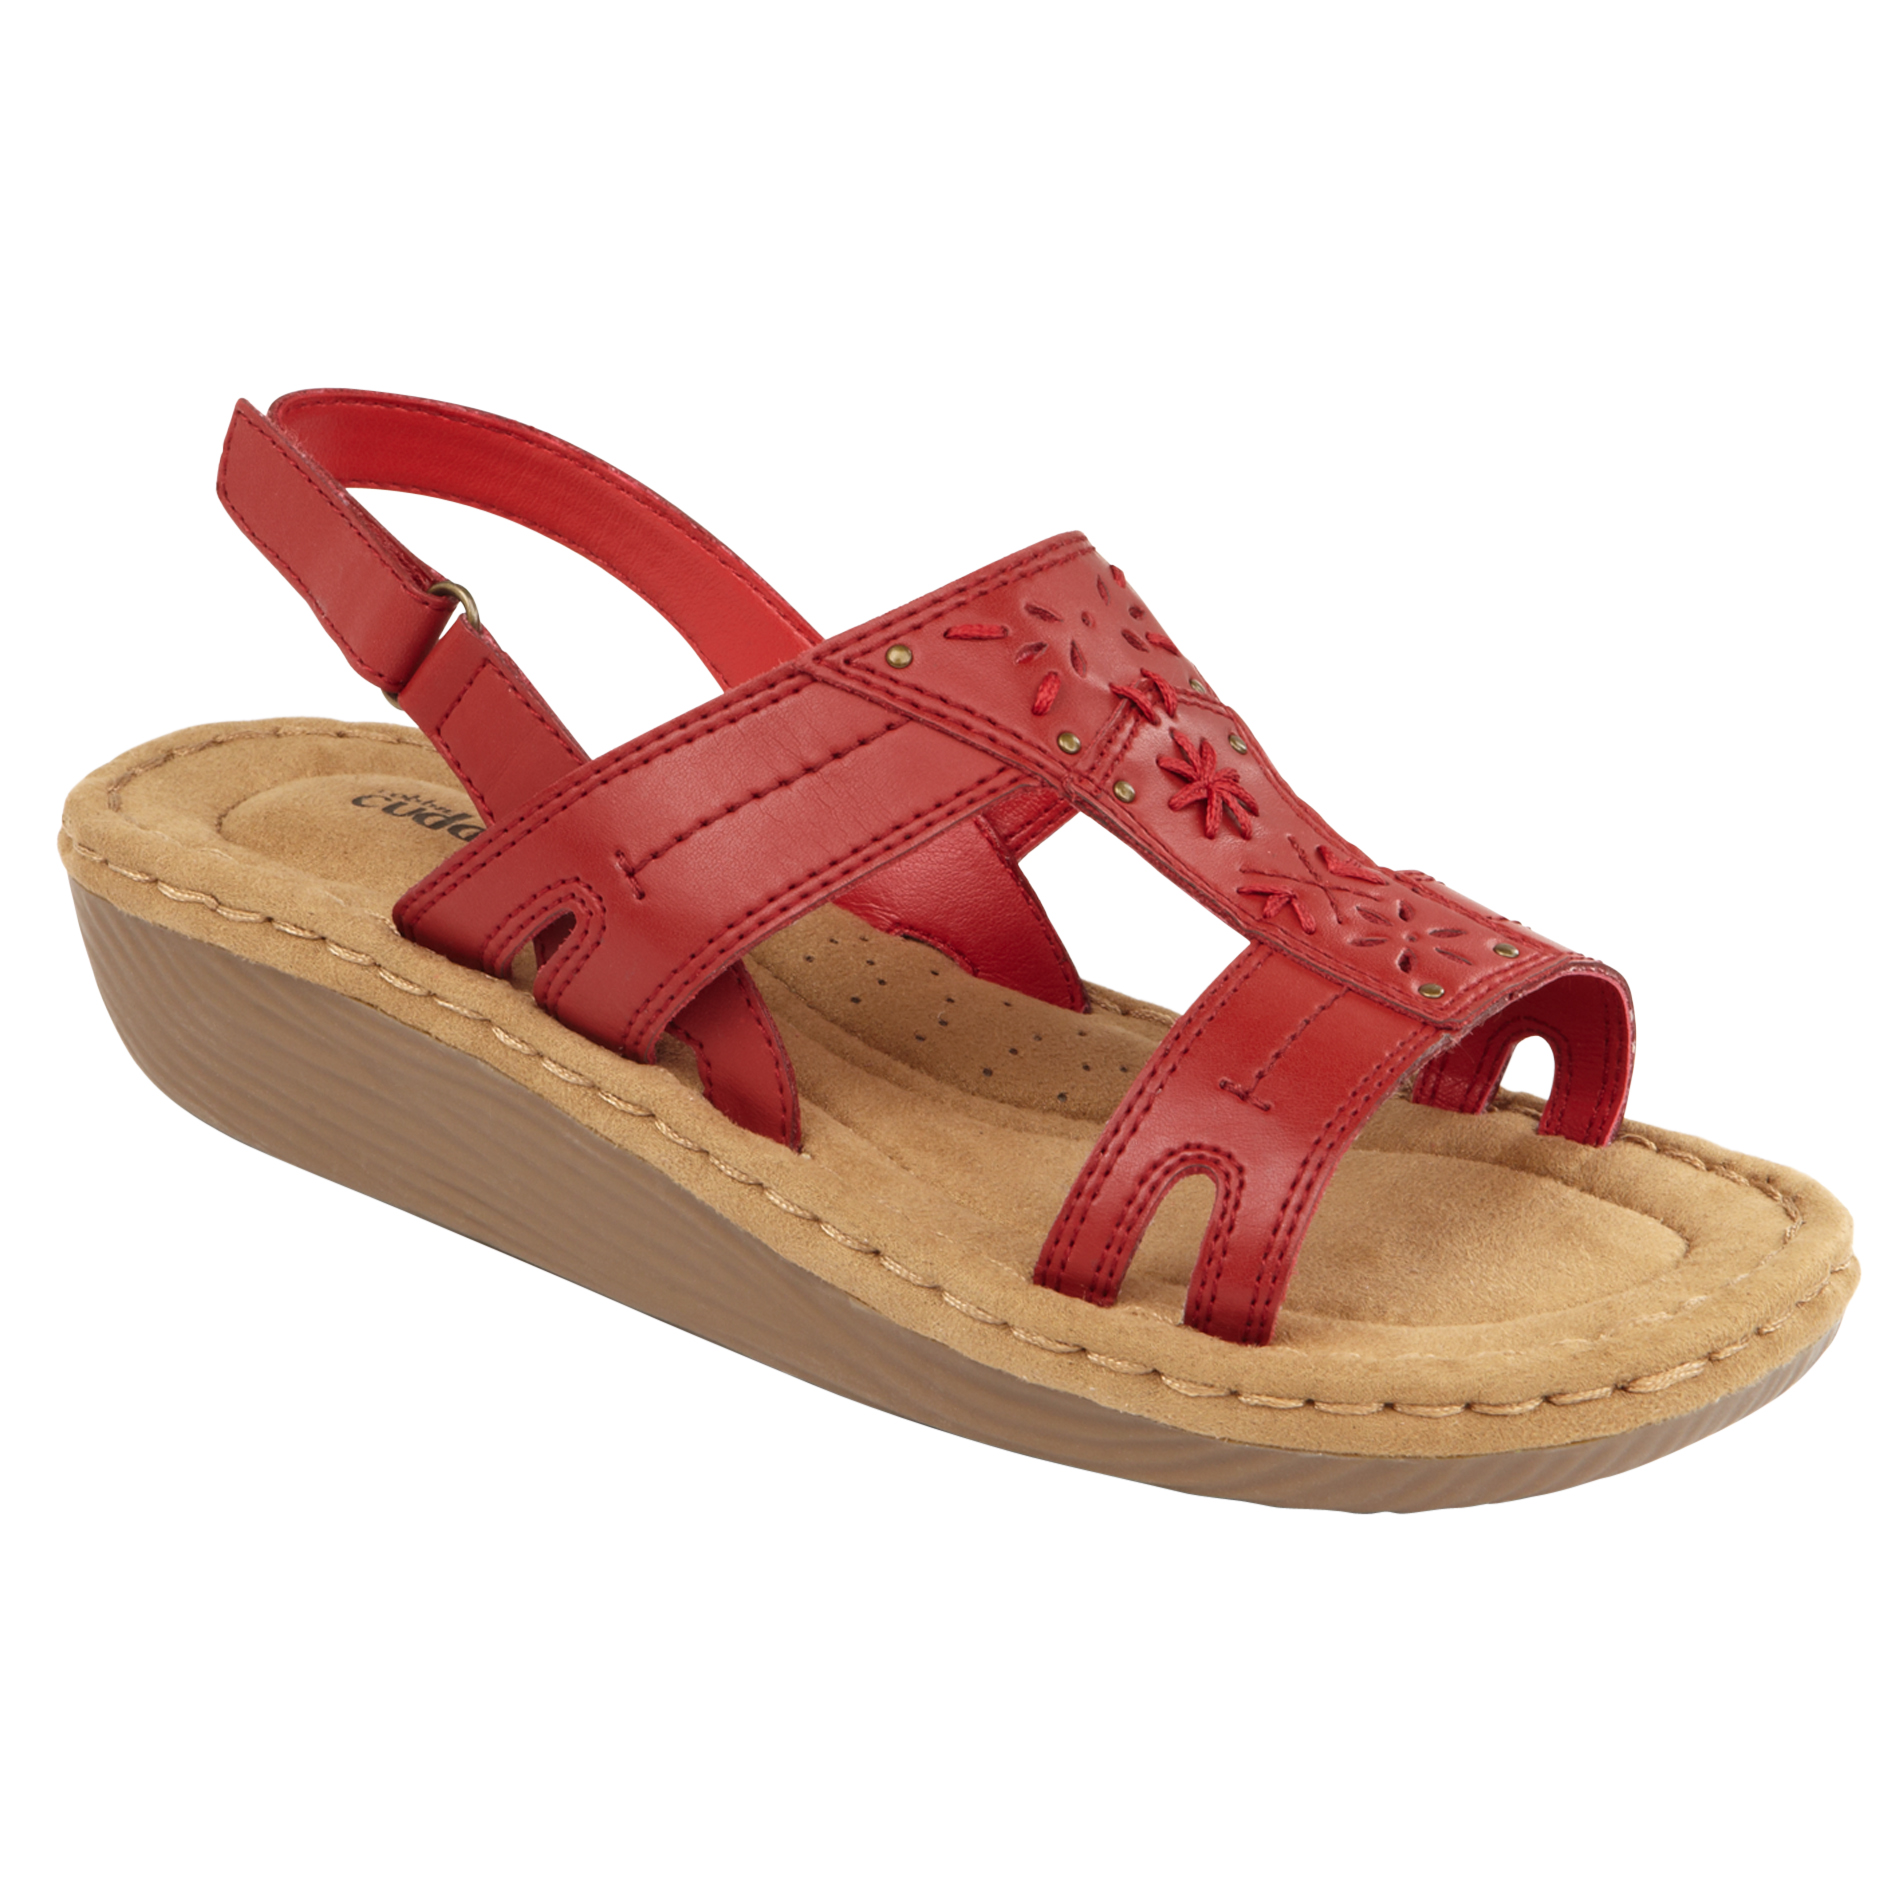 Cobbie Cuddlers Women's Sandal Dessie - Red